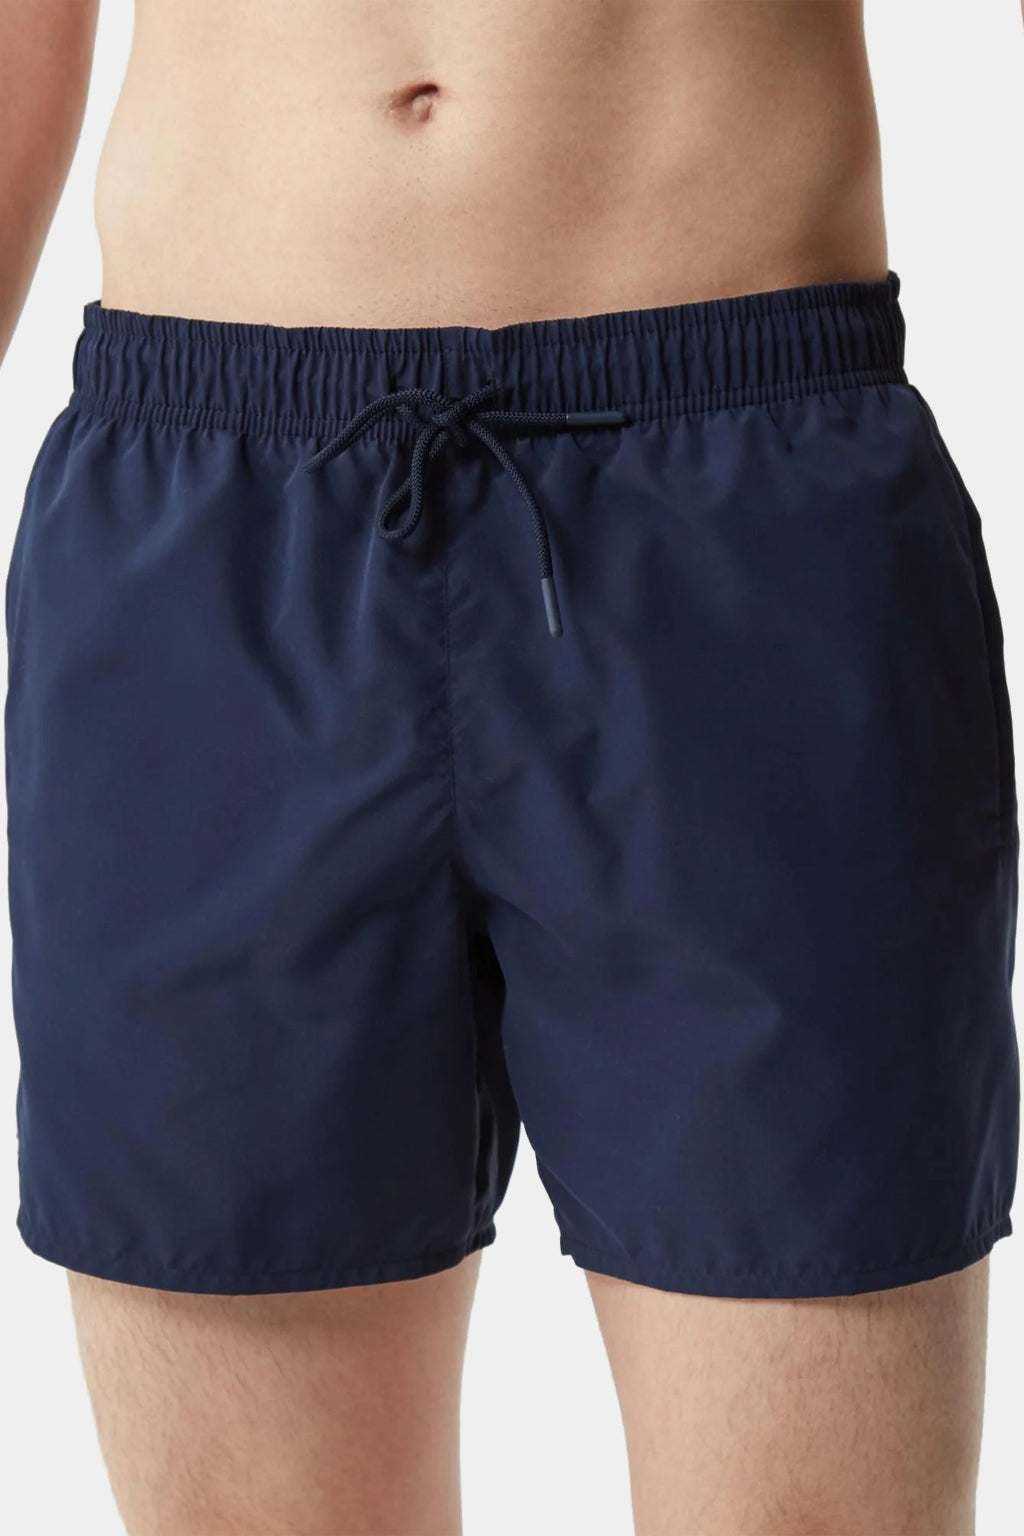 Lacoste - Lacoste Men's Light Quick-Dry Swim Shorts